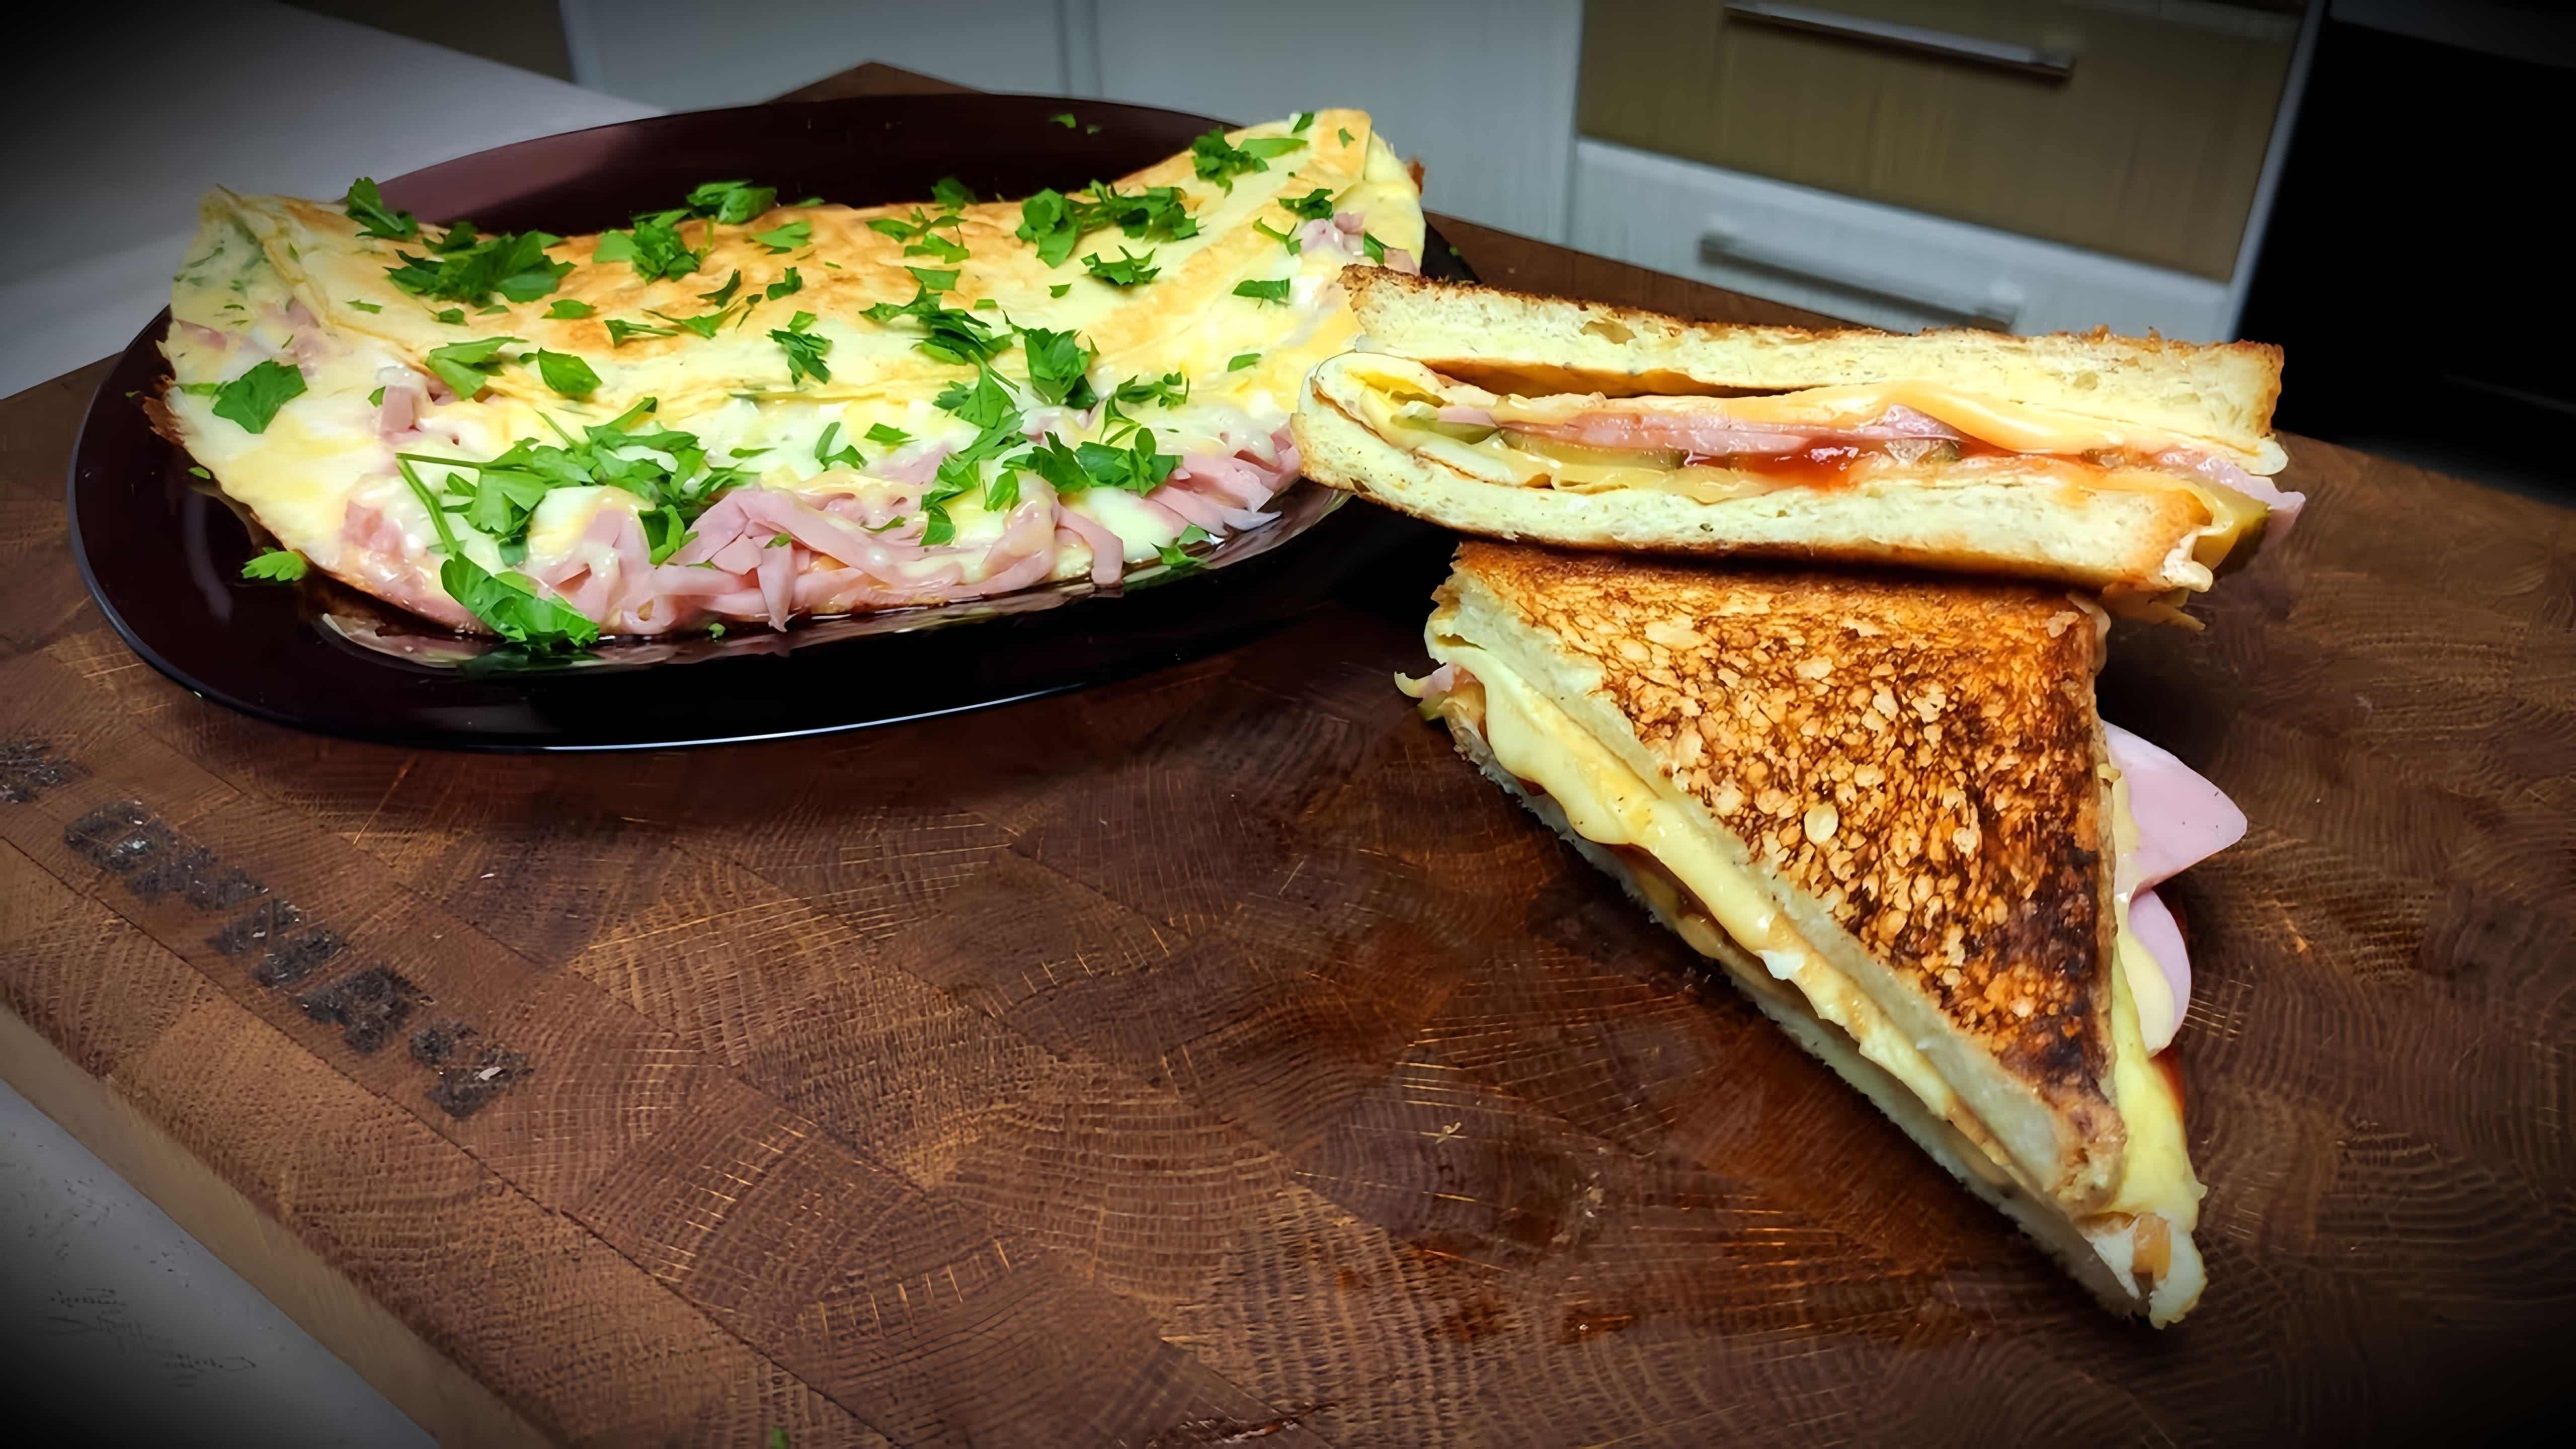 В этом видео демонстрируются два рецепта завтрака на основе яиц: омлет с ветчиной и сыром и сэндвич с омлетом